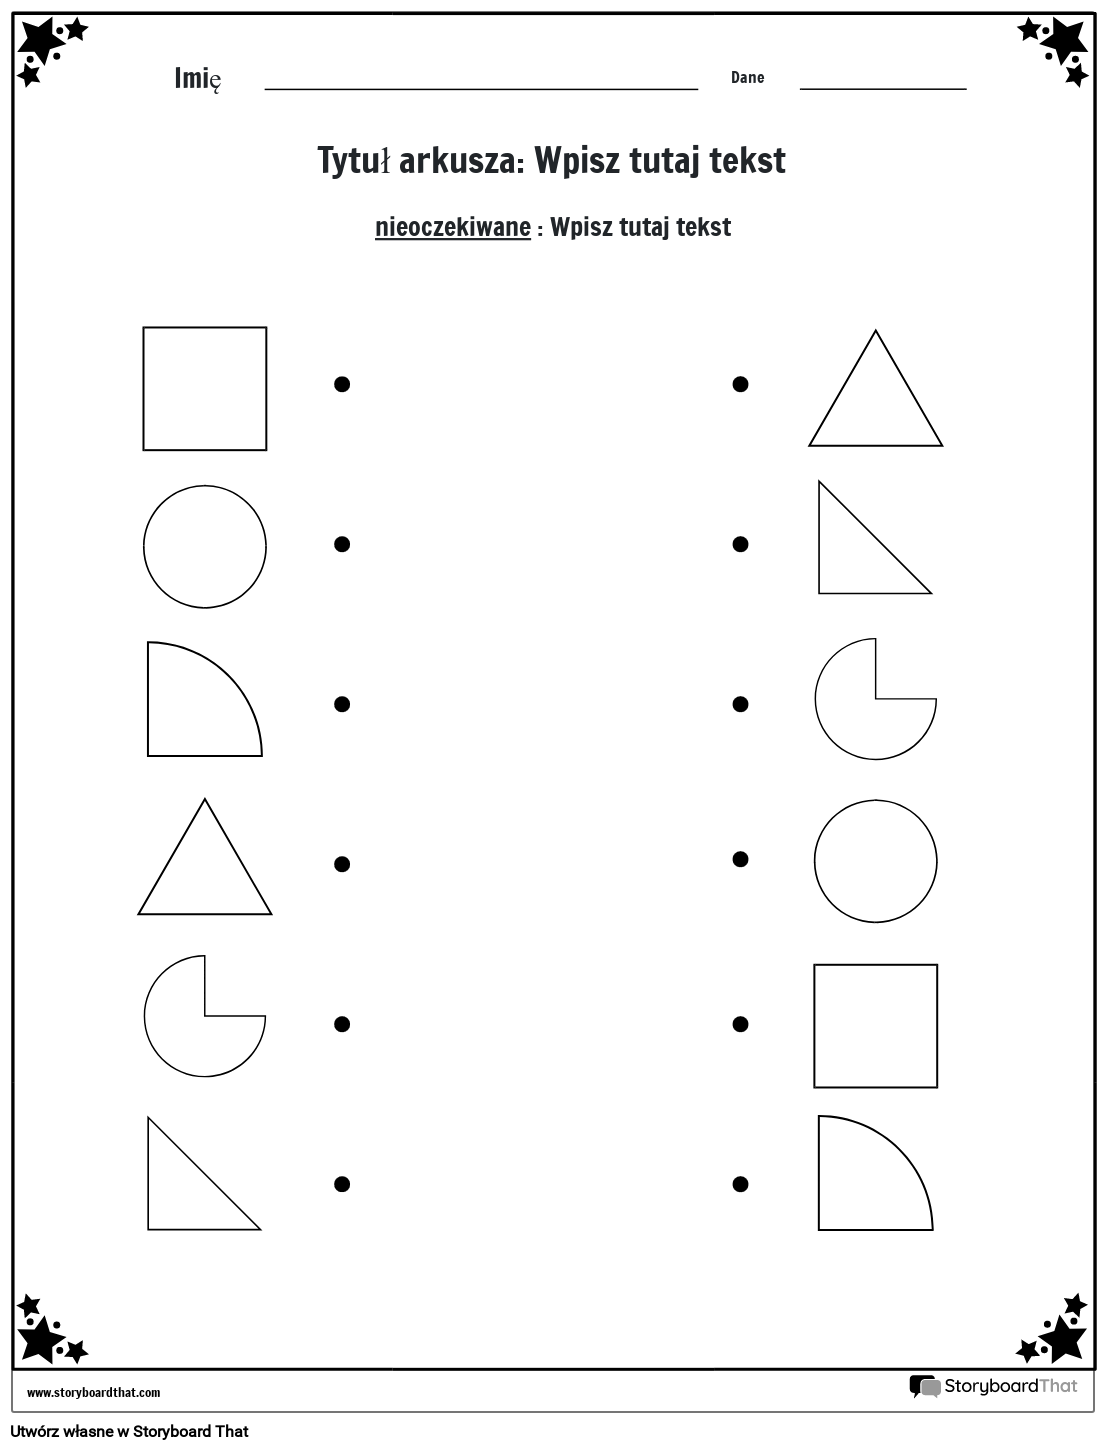 Arkusz dopasowywania kształtów (czarno-biały)